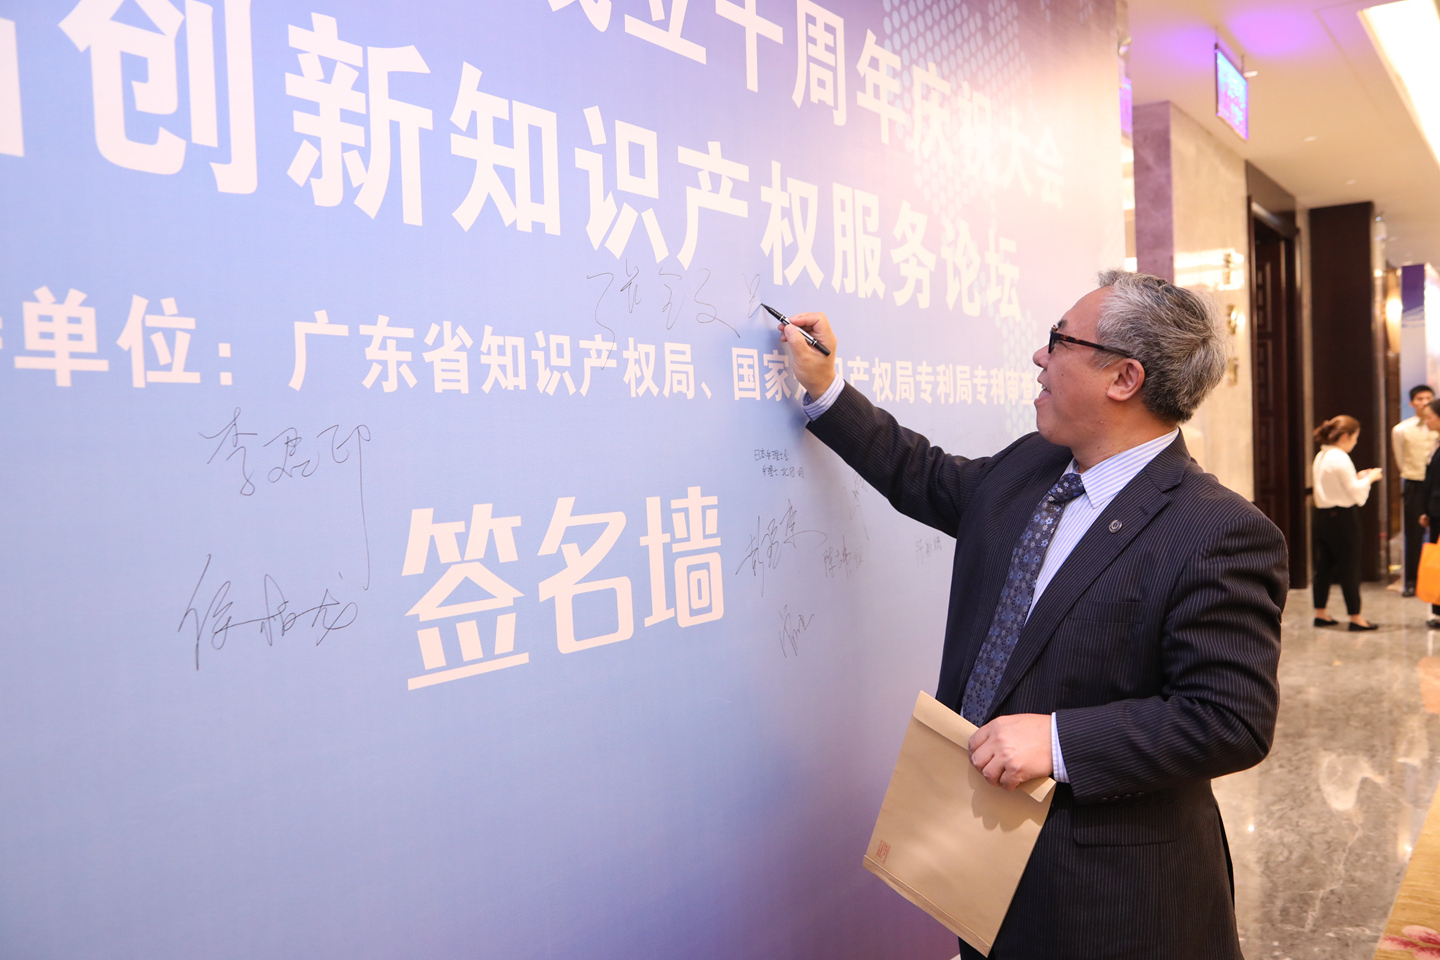 呉大建先生は広東省専利代理協会設立10周年の慶祝会即第三回創新知識産権サービスフォーラムを出席しました